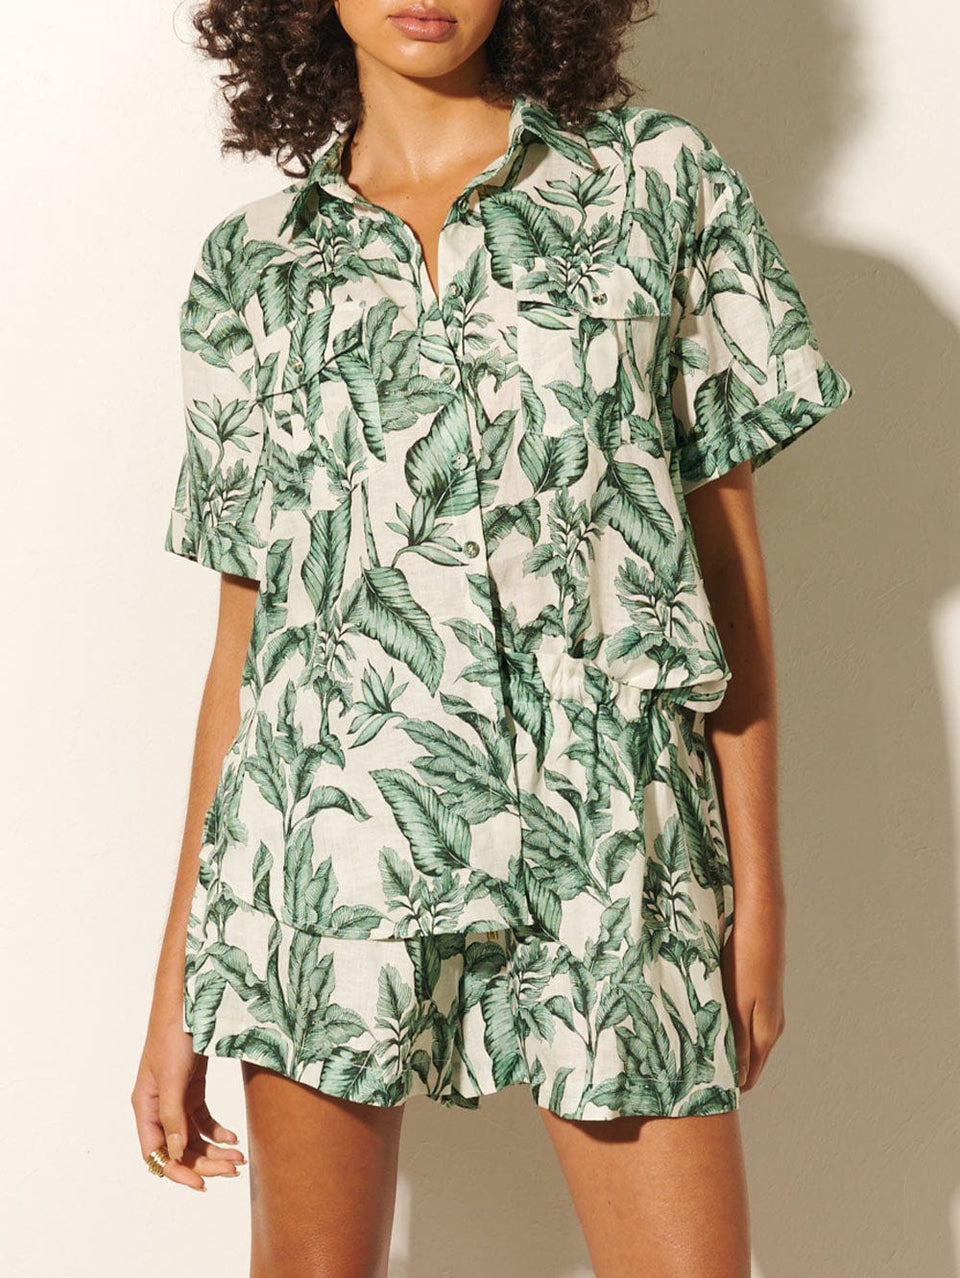 Tropico Shirt KIVARI | Model wears palm leaf print shirt close up